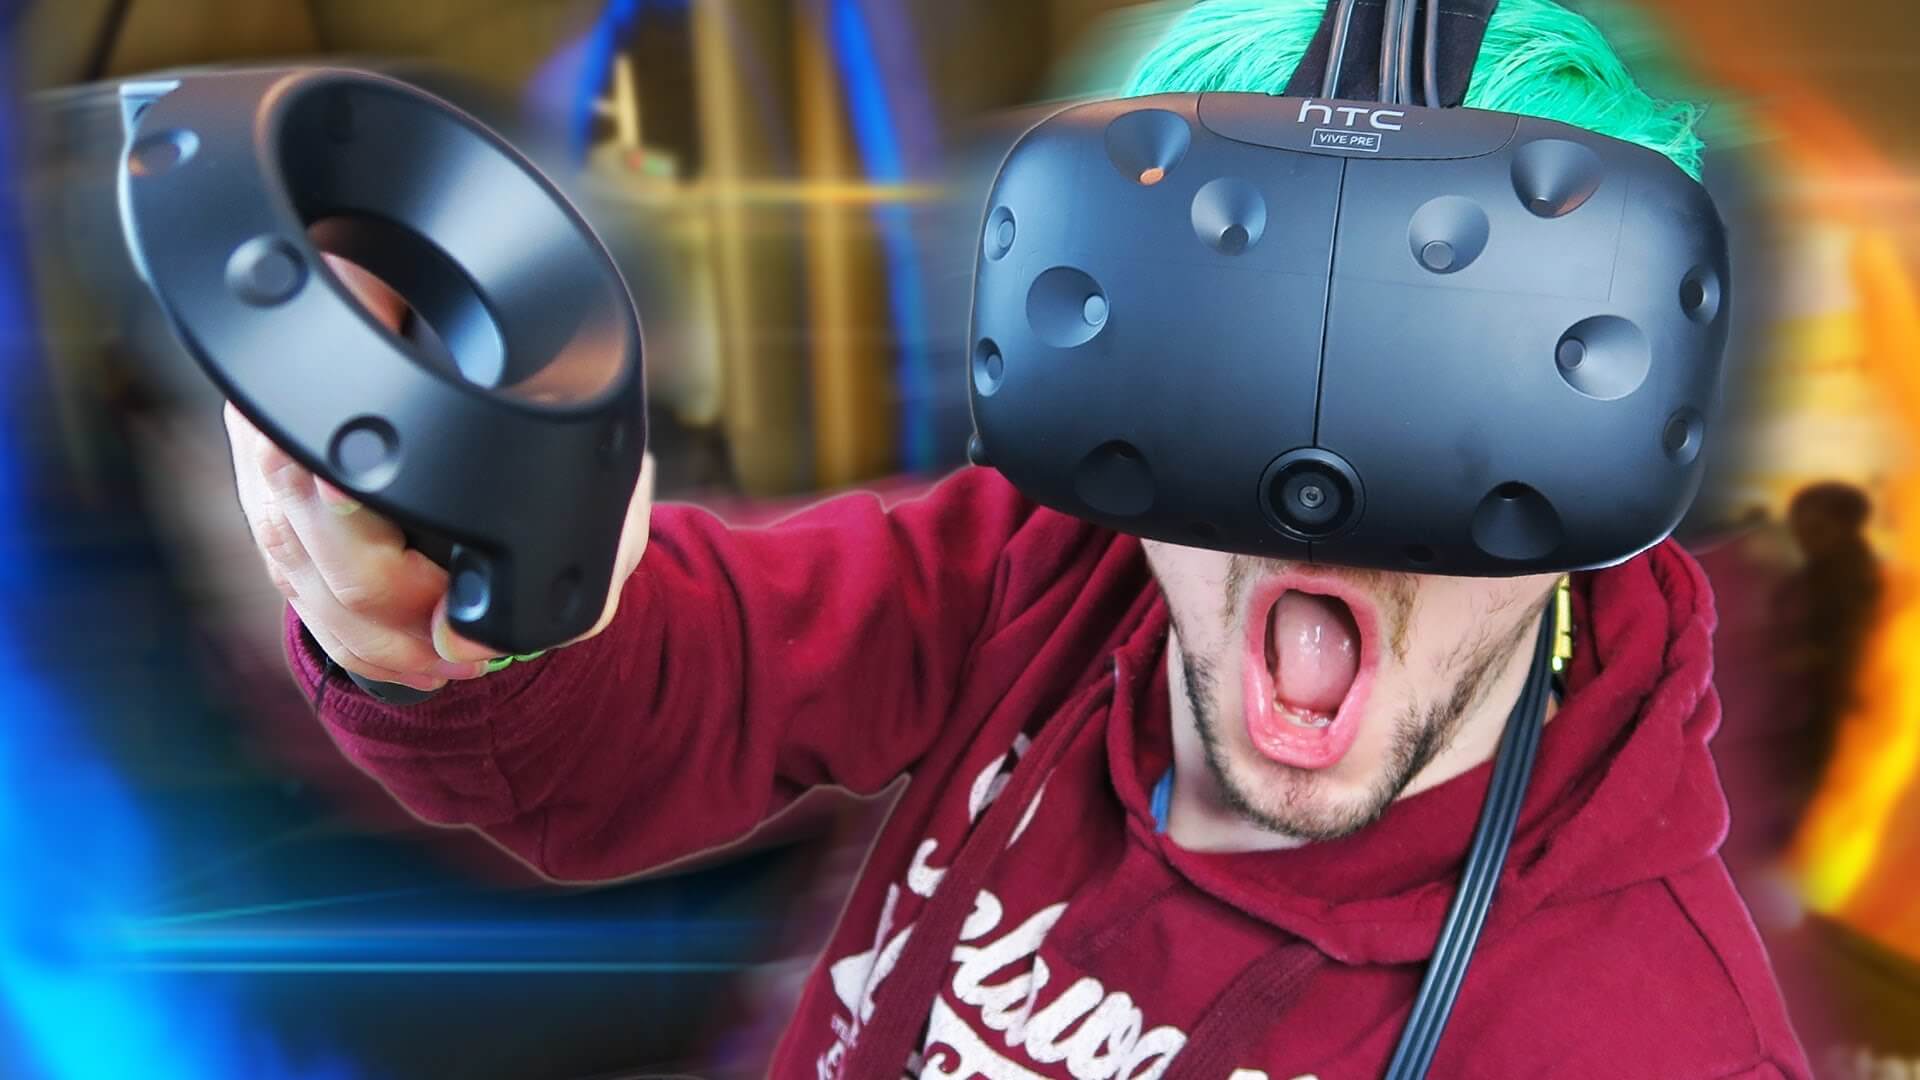 Поиграем в виртуальные игры. Шлем vr50. VR аттракцион Окулус 2. Шлем виртуальной реальности. Ребенок в шлеме виртуальной реальности.